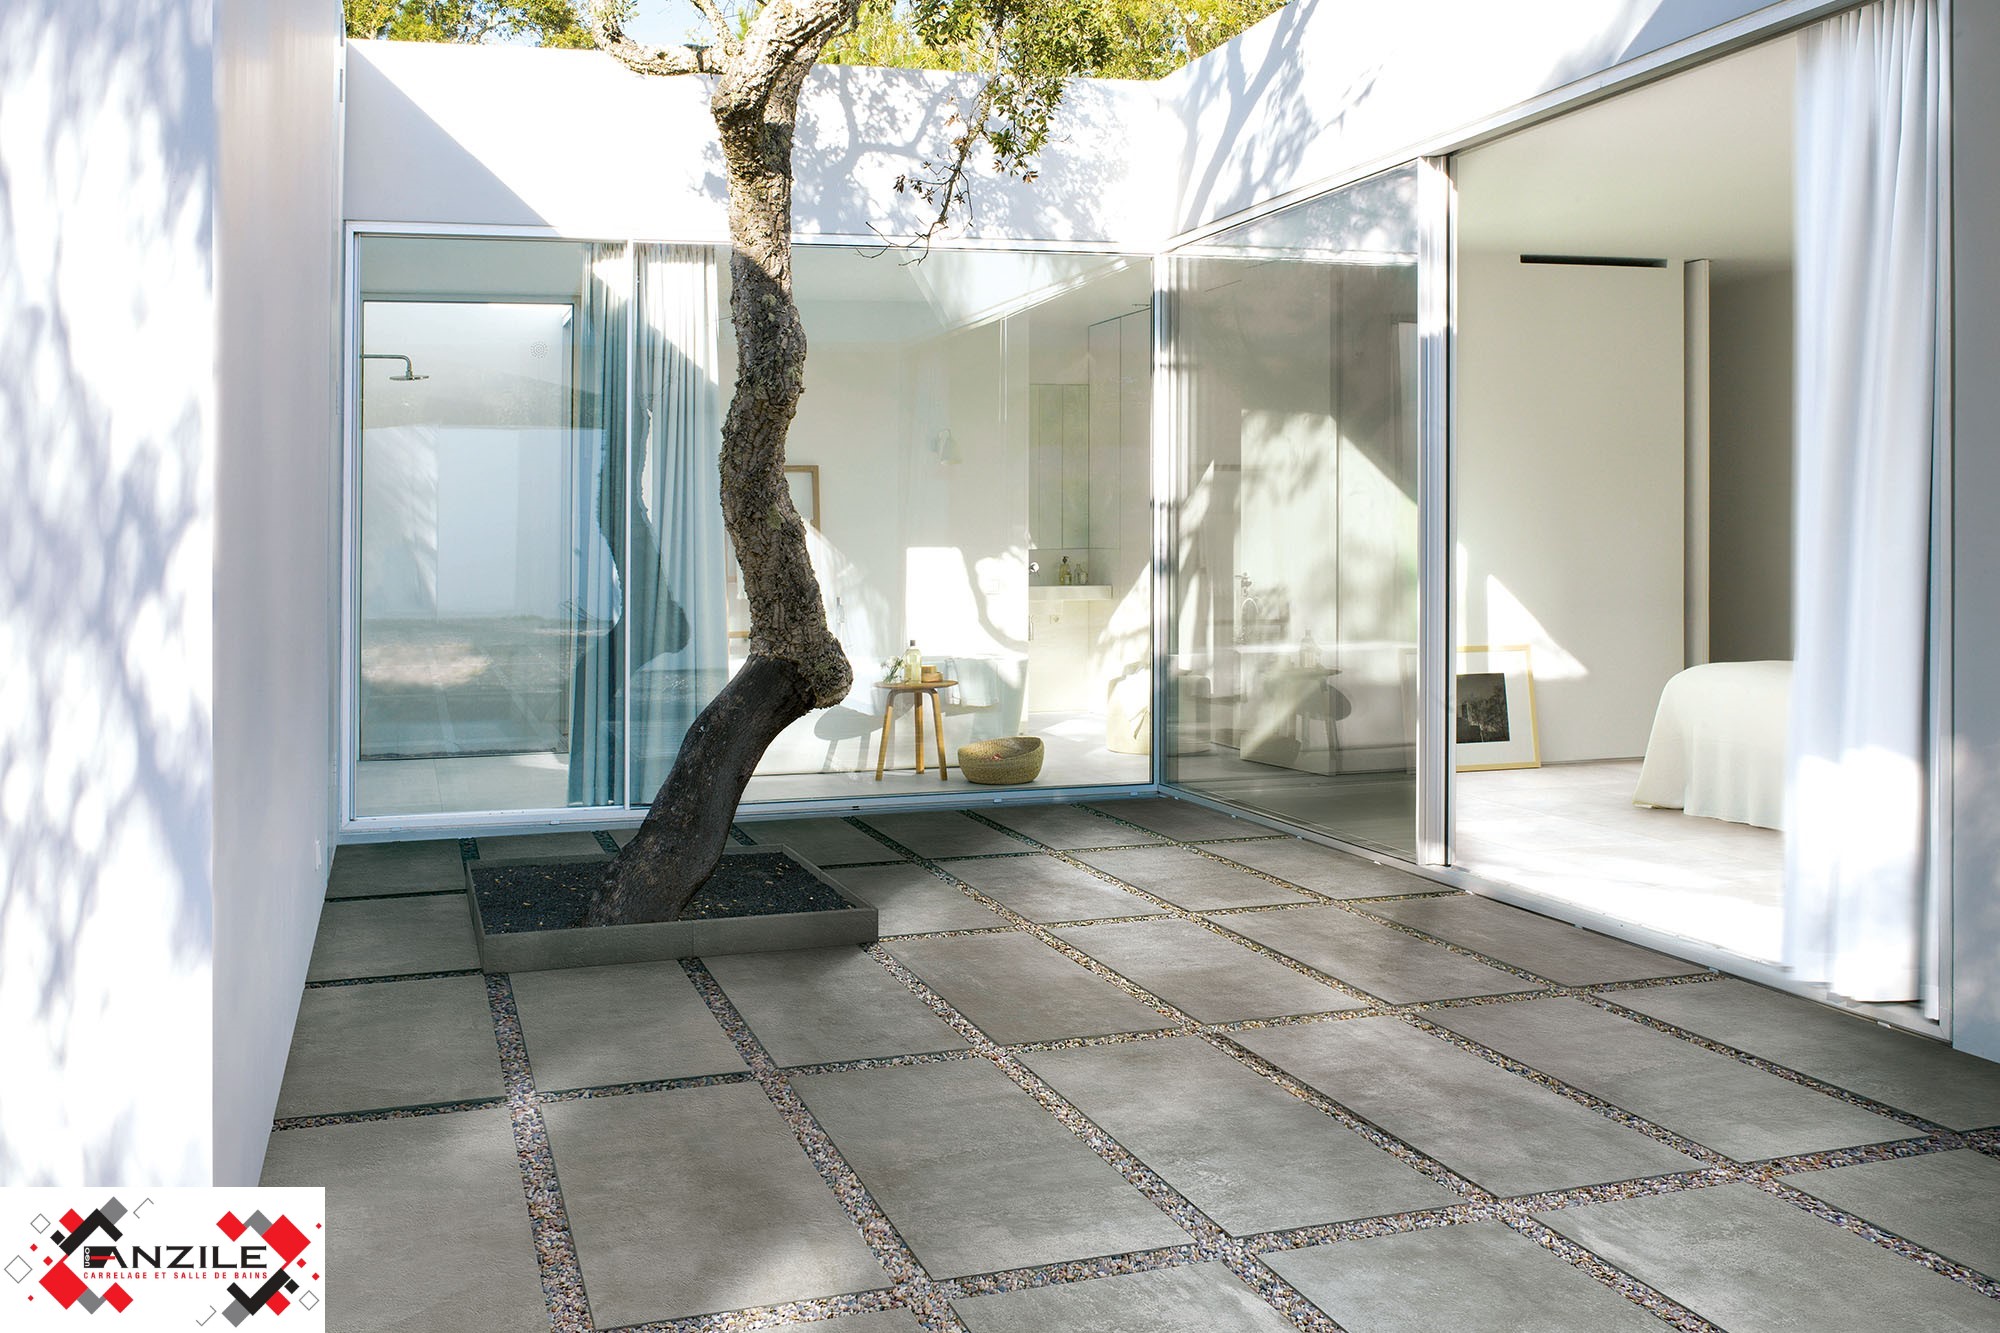 Dalles terrasse extérieur - dalles imitation béton - anzile carrelage -memento Grigio 50x100 cm